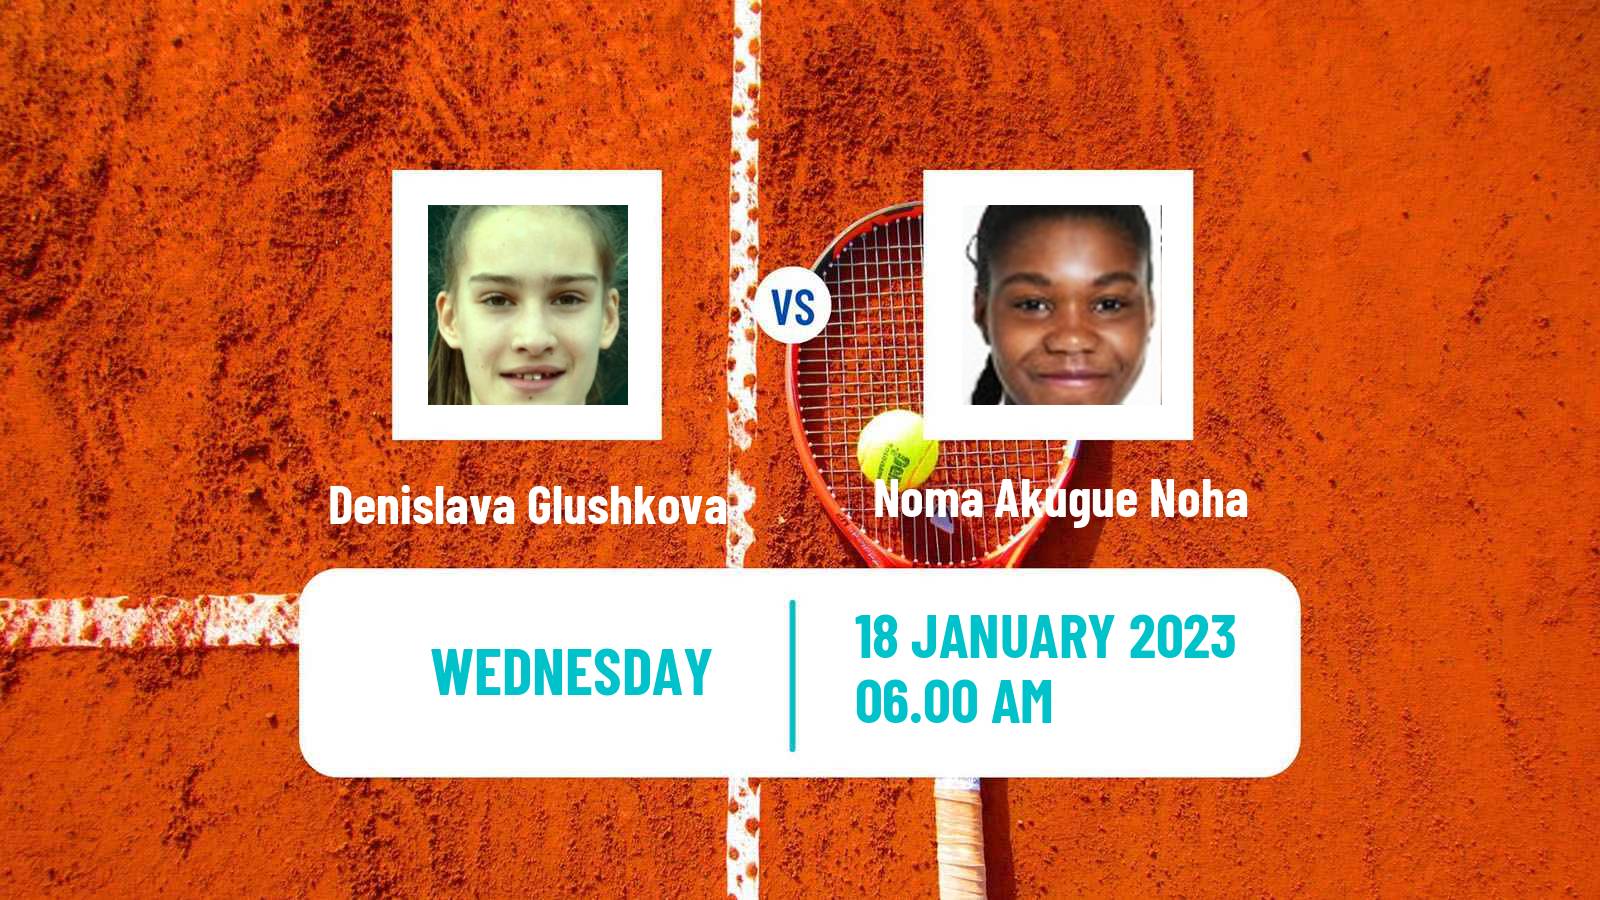 Tennis ITF Tournaments Denislava Glushkova - Noma Akugue Noha